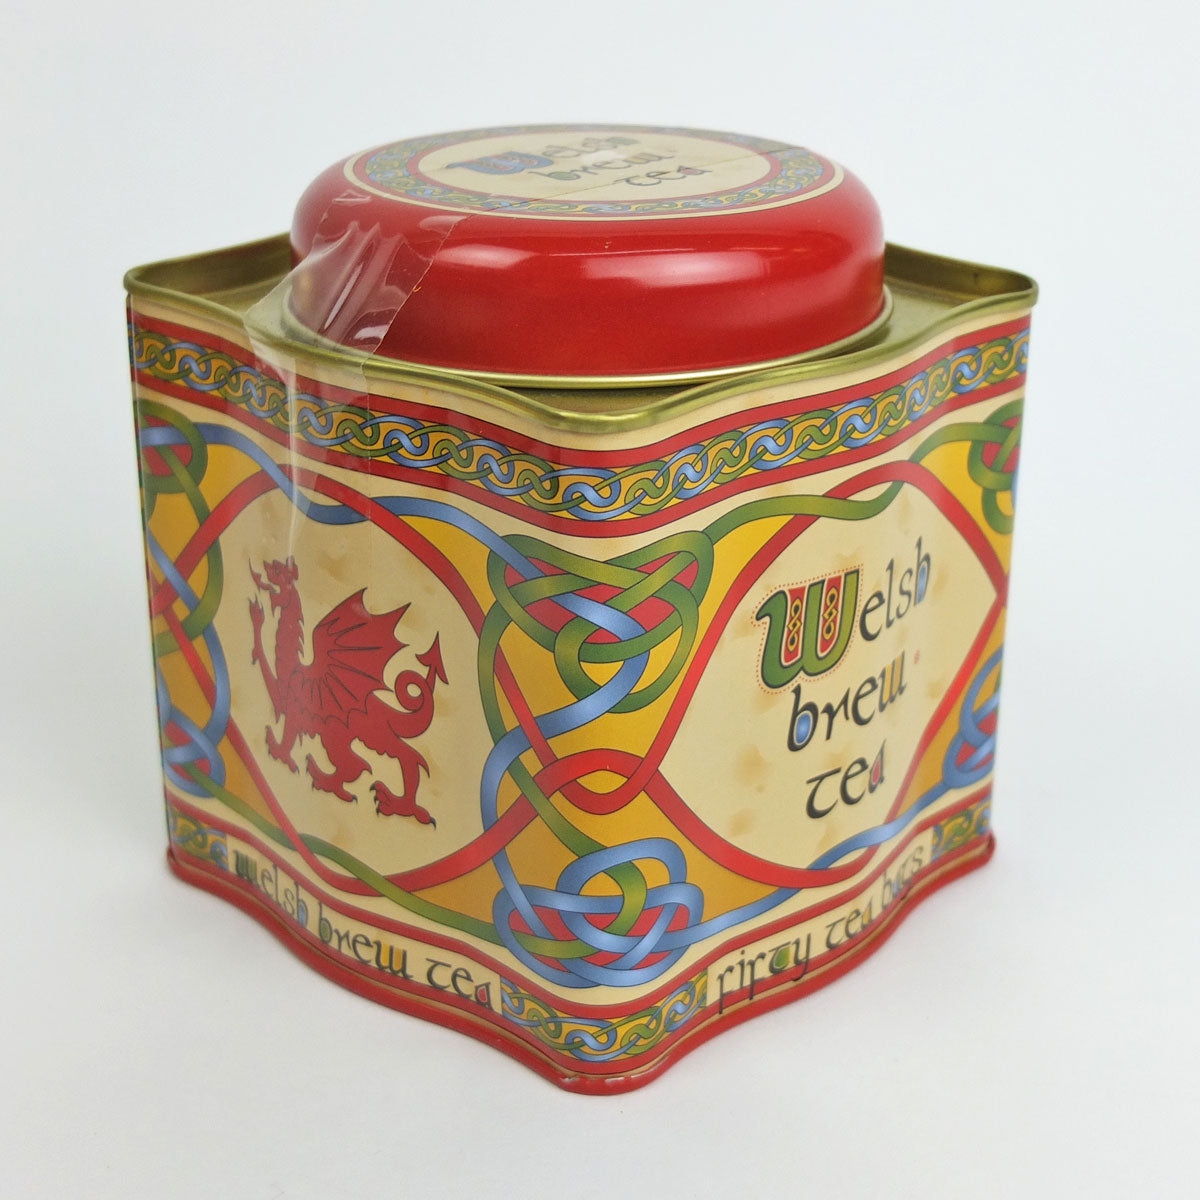 Welsh Brew Tea Bag Tin